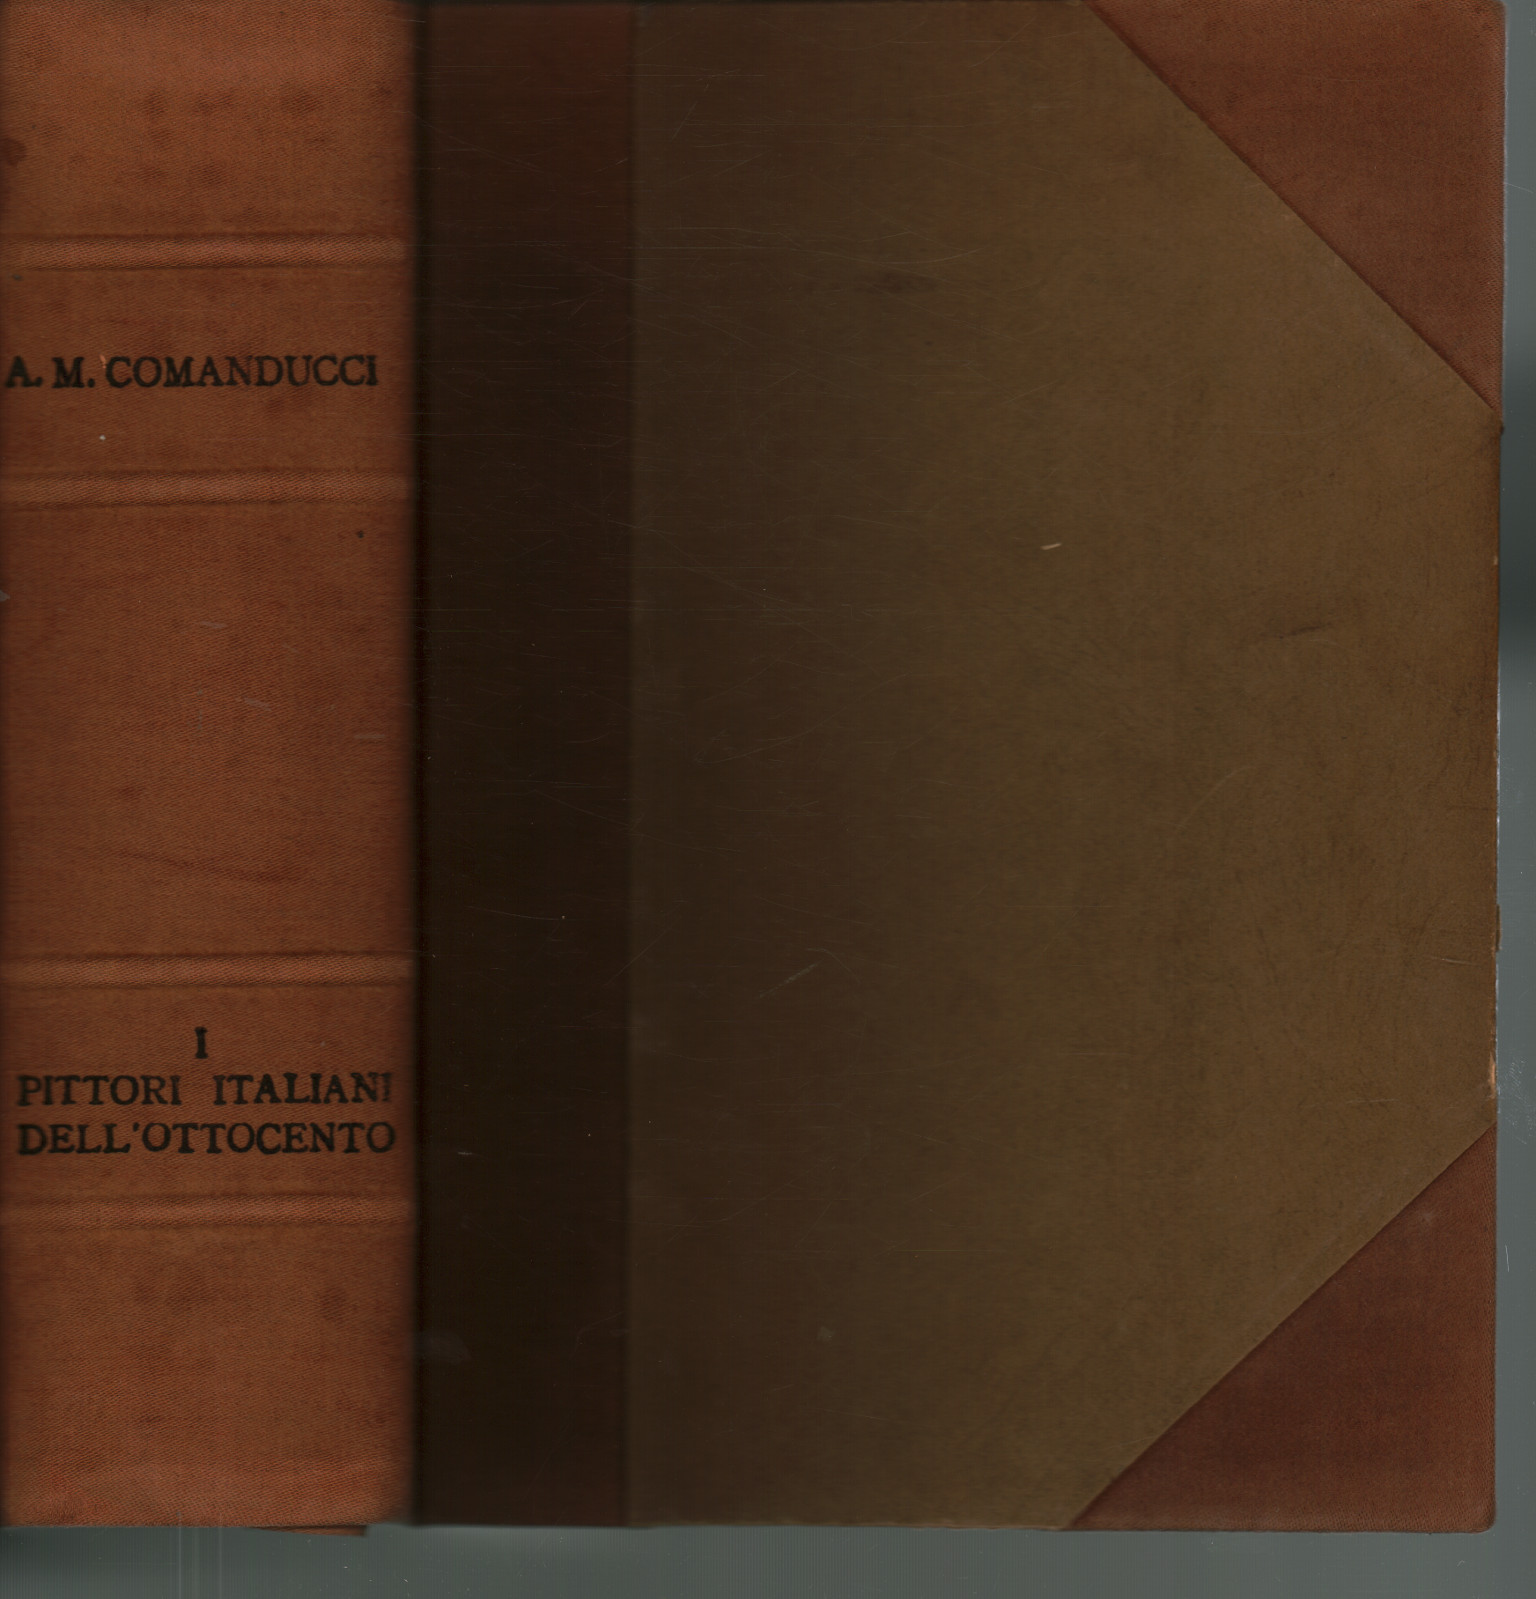 Italienischer maler dell ' Ottocento. Wörterbuch crit, A. M. Comanducci